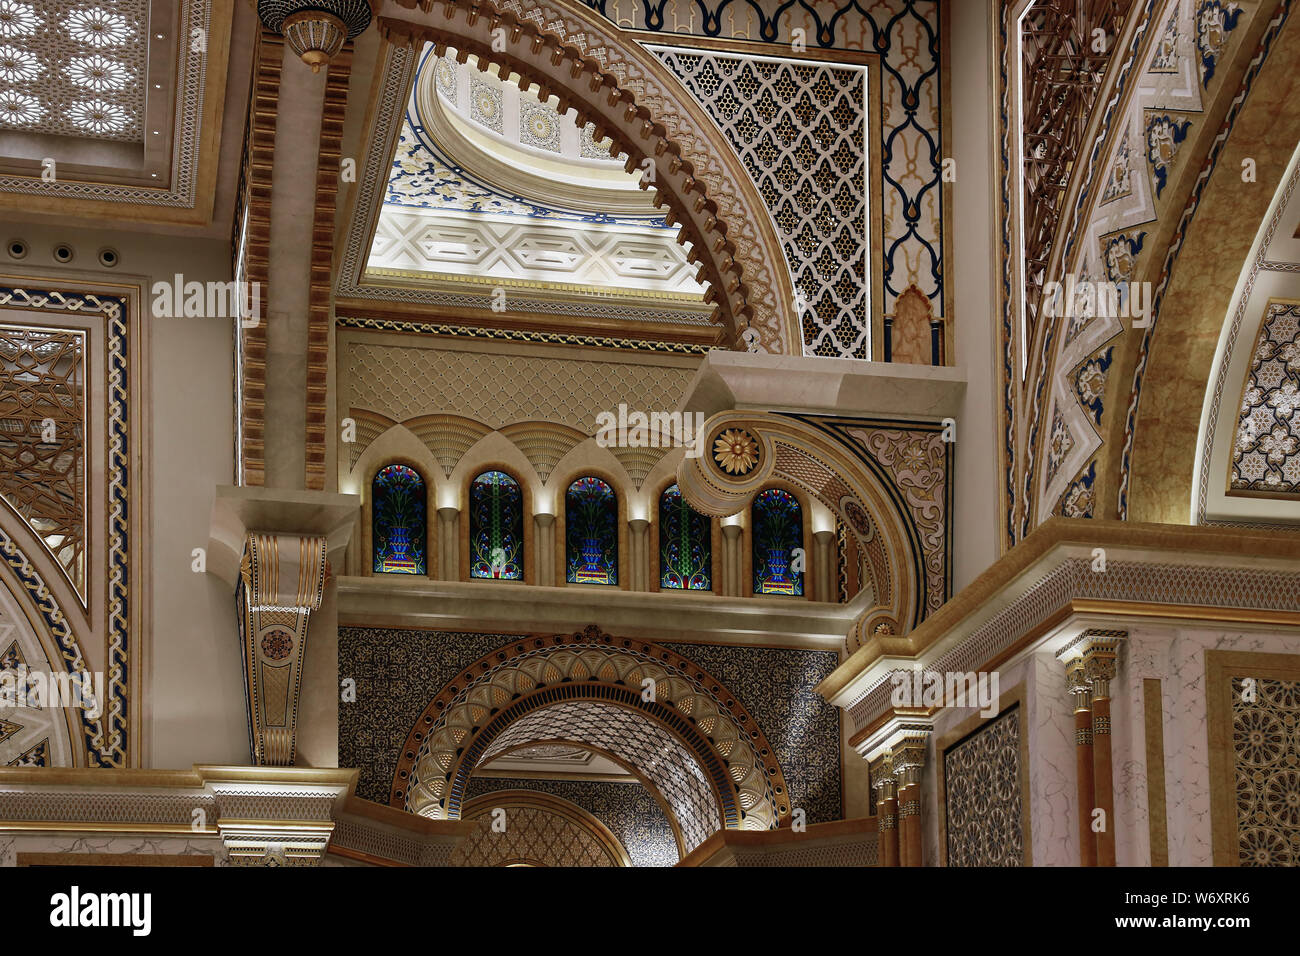 Qasr Al Watan [Palast der Nation] Abu Dhabi - Interieur architektonisches Detail Stockfoto